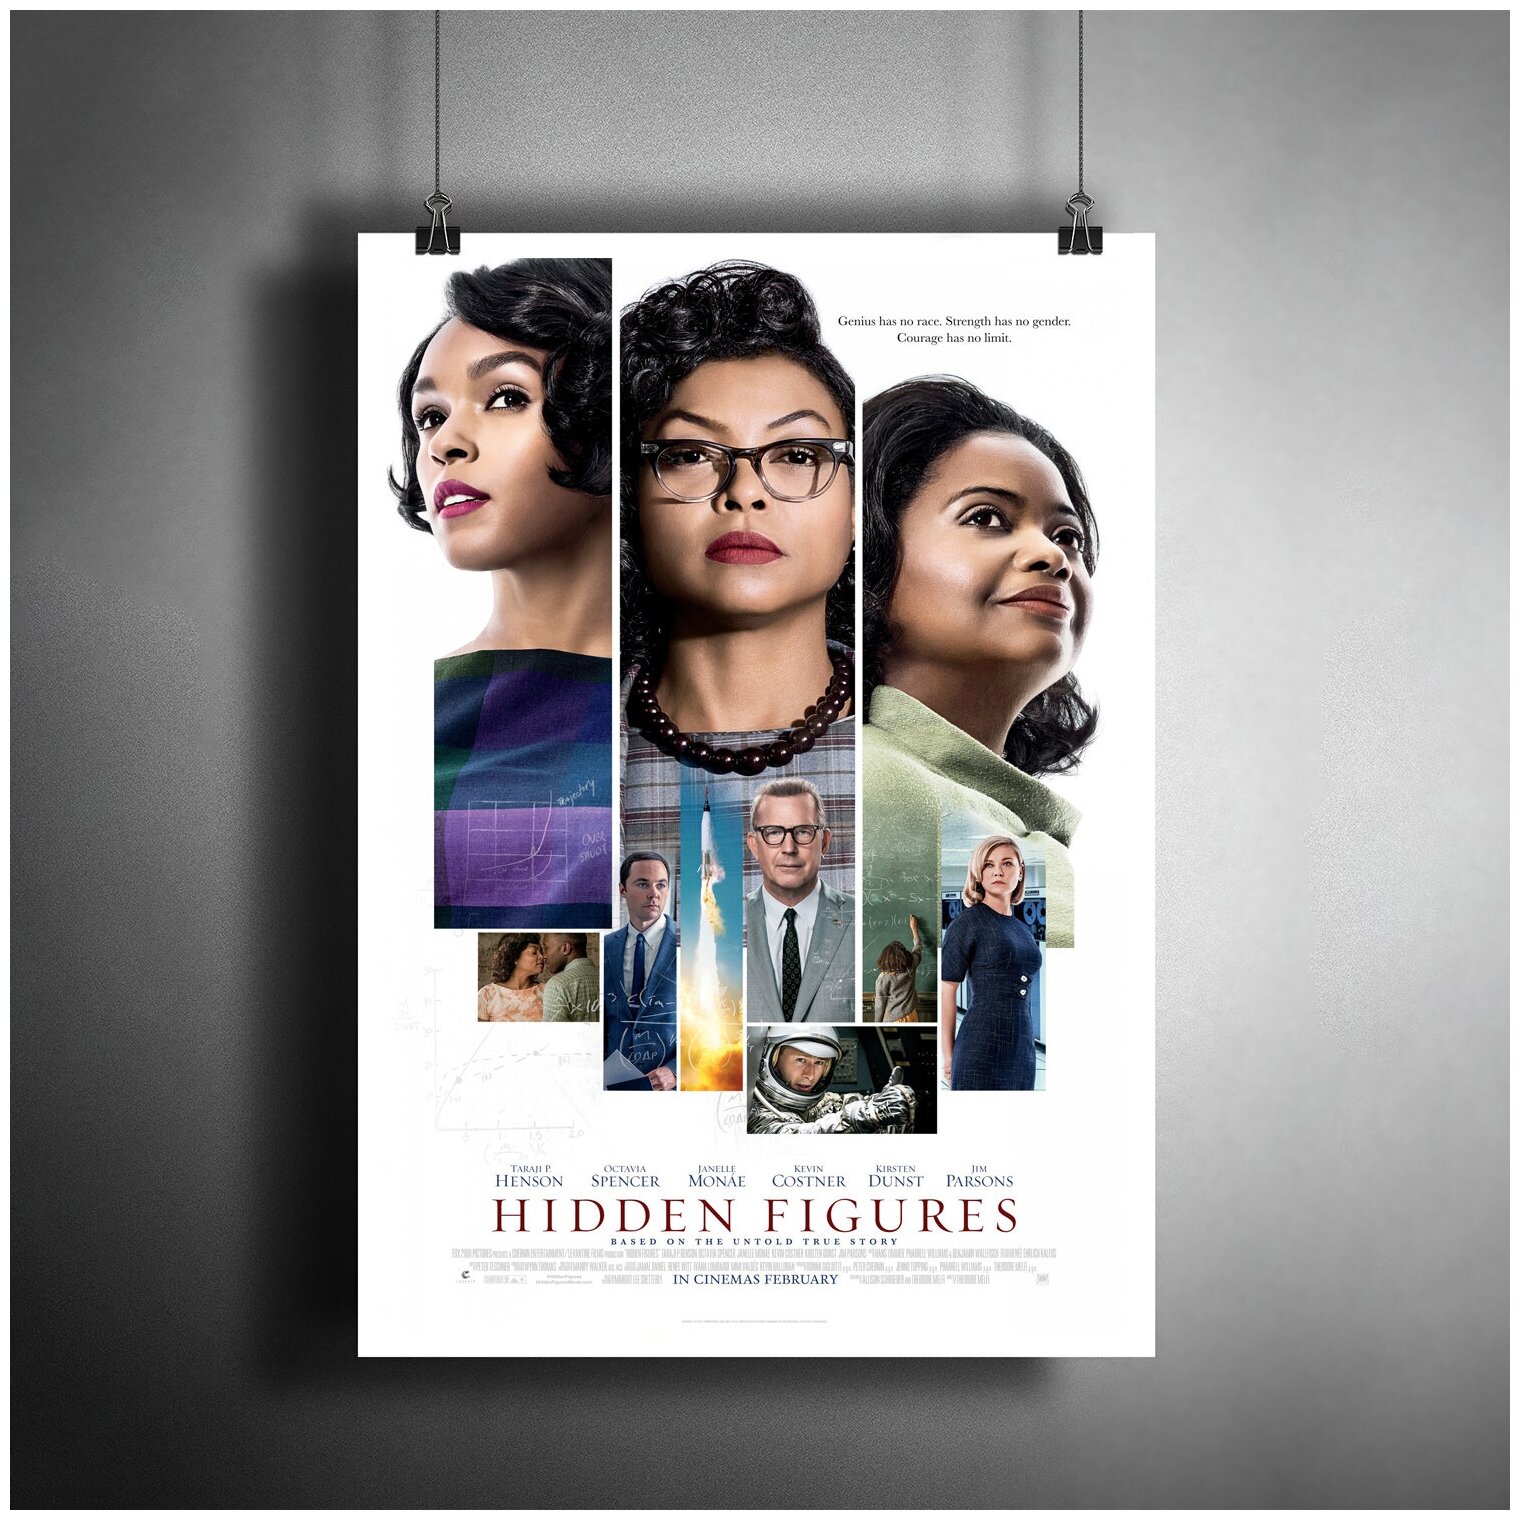 Постер плакат для интерьера "Фильм: Скрытые фигуры. Hidden Figures"/ Декор дома, офиса, комнаты A3 (297 x 420 мм)